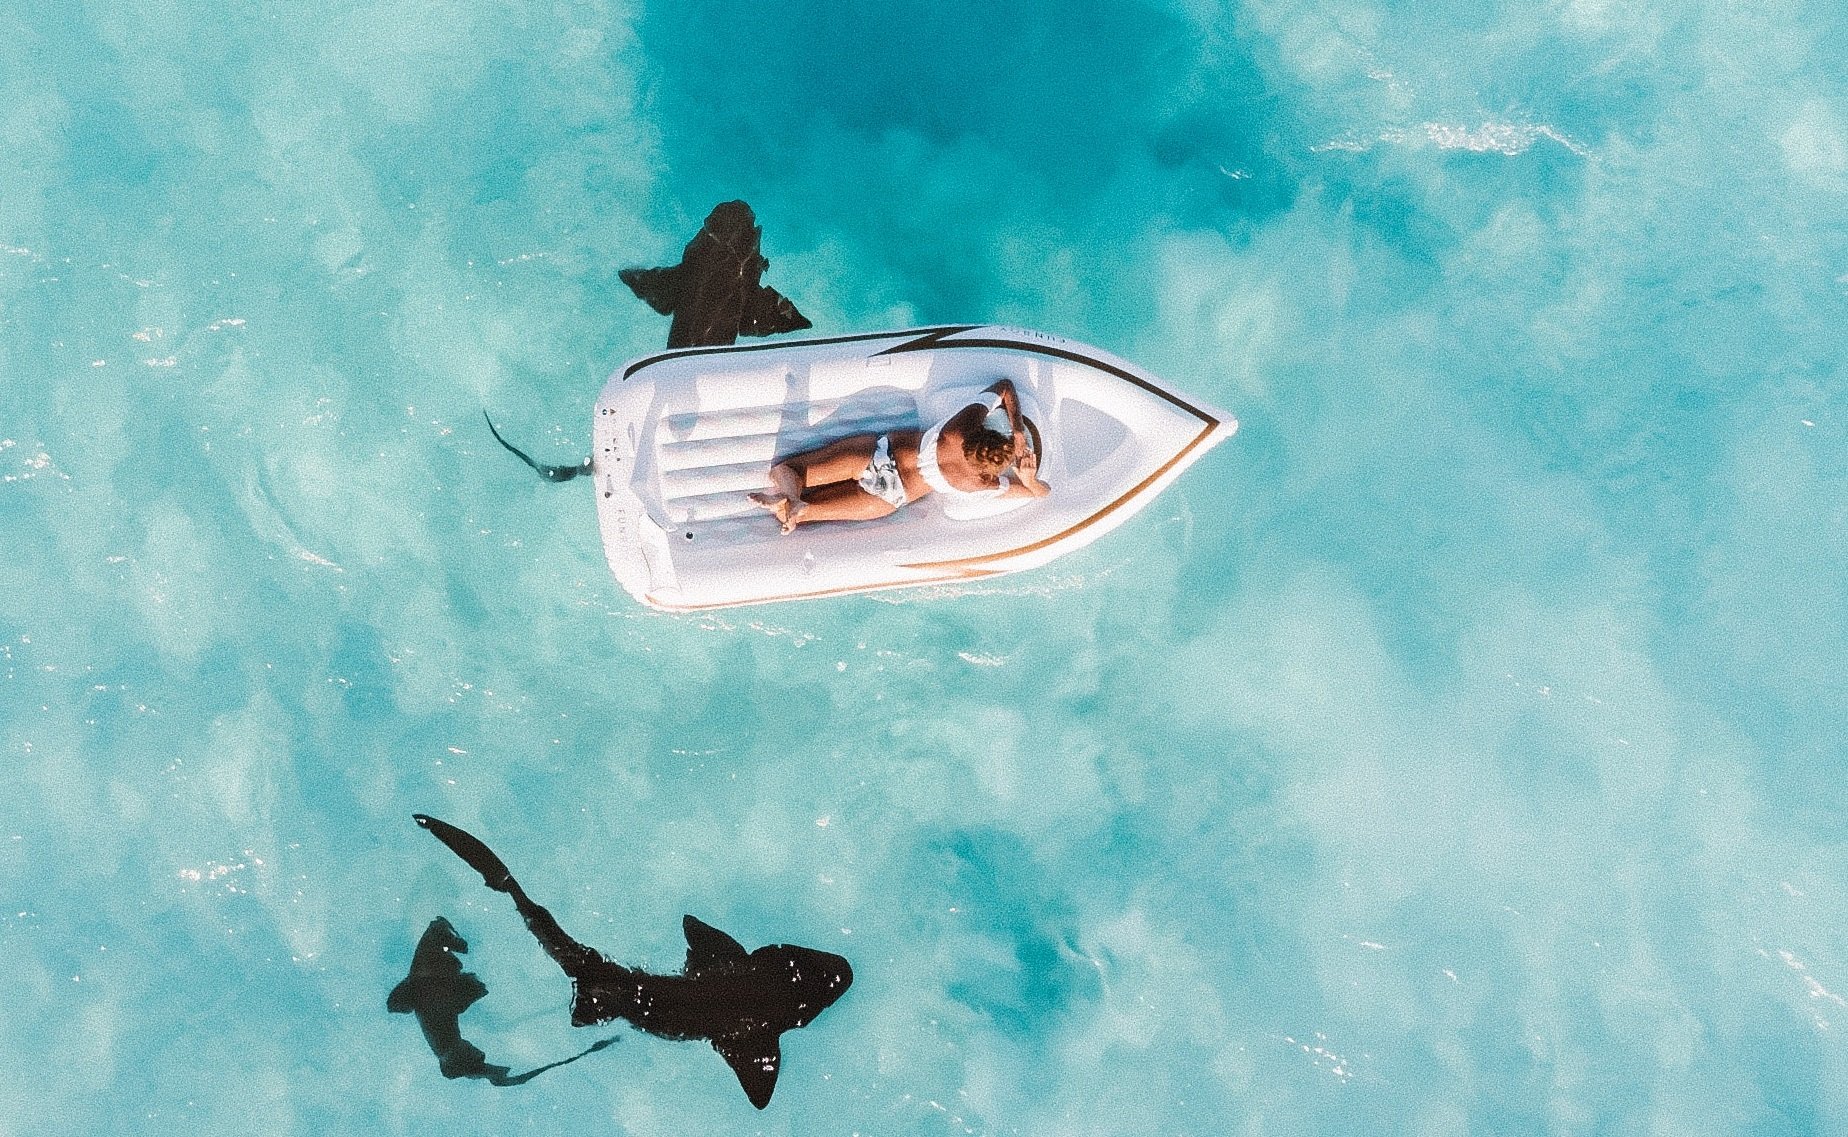 requins2.jpg?resize=412,232 - Un père de famille filmait ses enfants avec son drone et repère un requin en train de s'approcher..